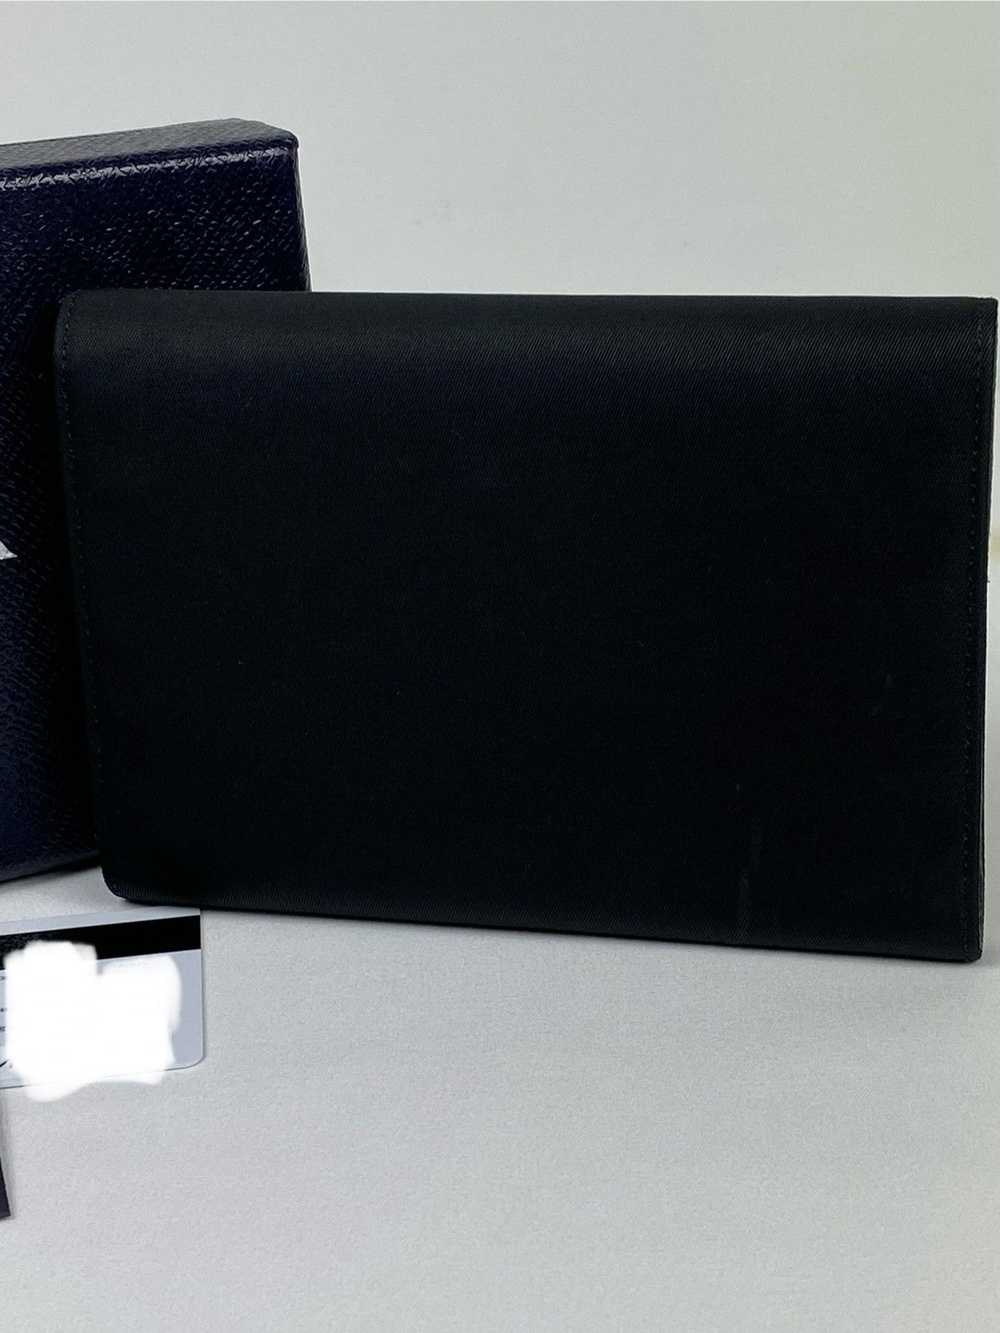 Prada Prada Tessuto Nero Nylon trifold wallet - image 3